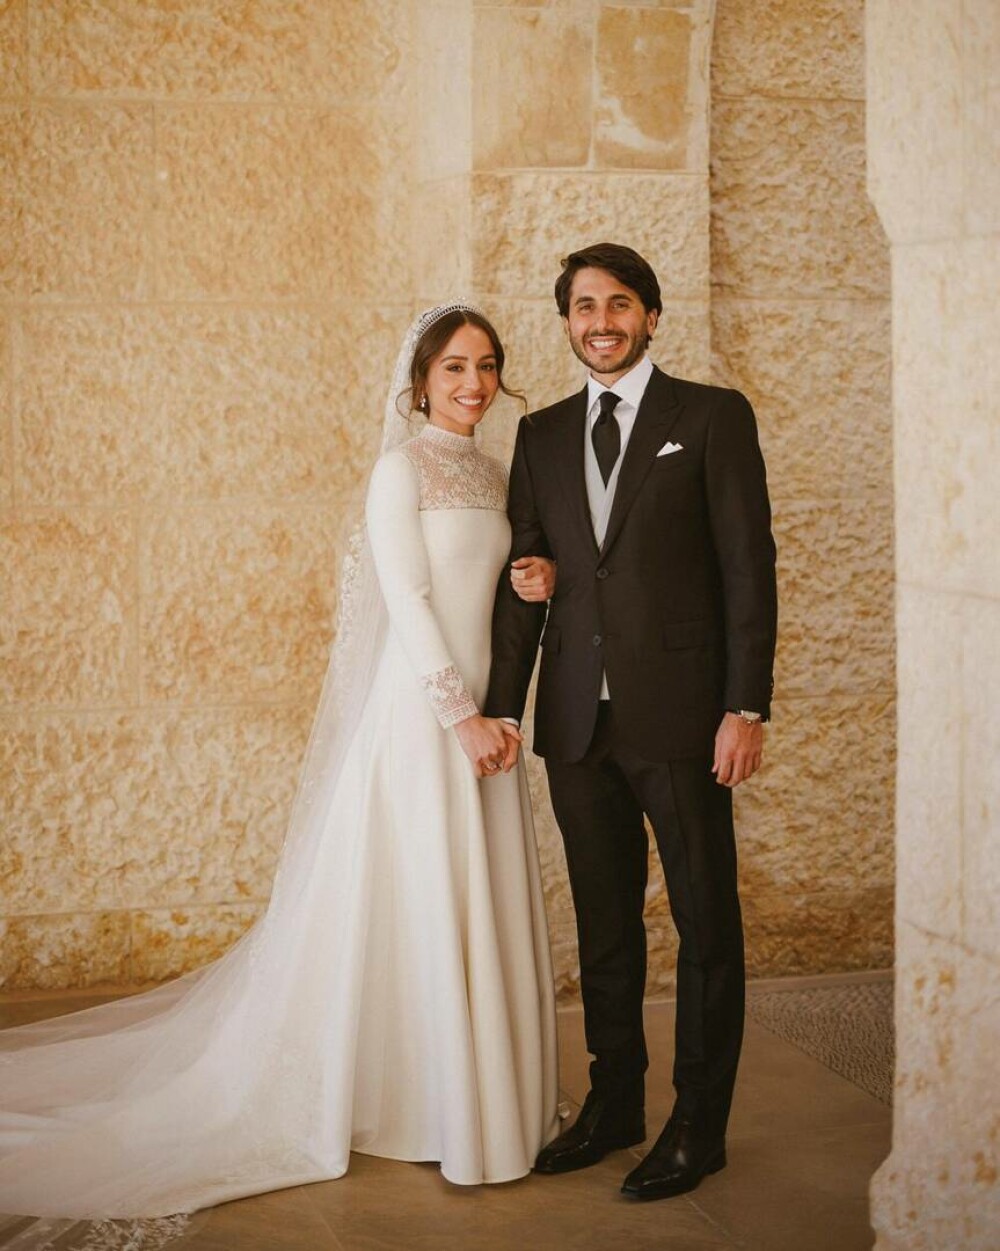 Prințesa Iman a Iordaniei s-a căsătorit cu un finanțist de origine greacă. Imaginile sunt spectaculoase GALERIE FOTO & VIDEO - Imaginea 11